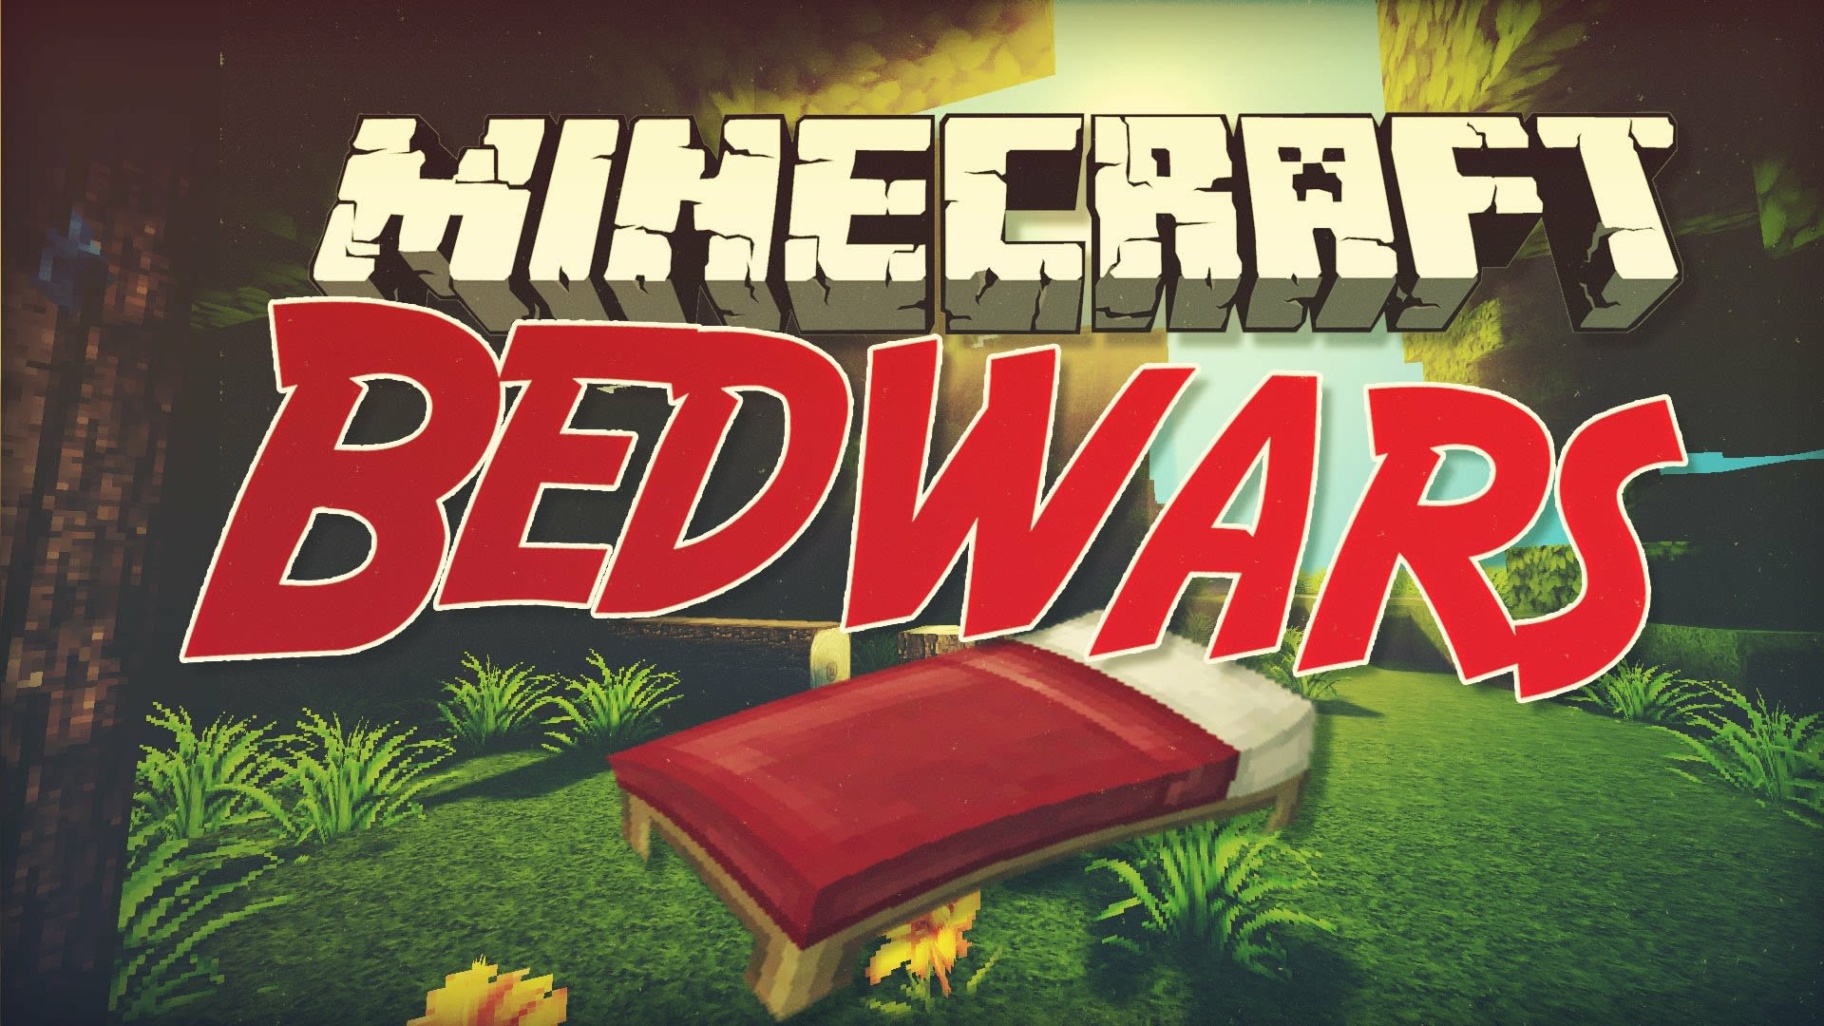 ArtStation - Title Minecraft Bed Wars